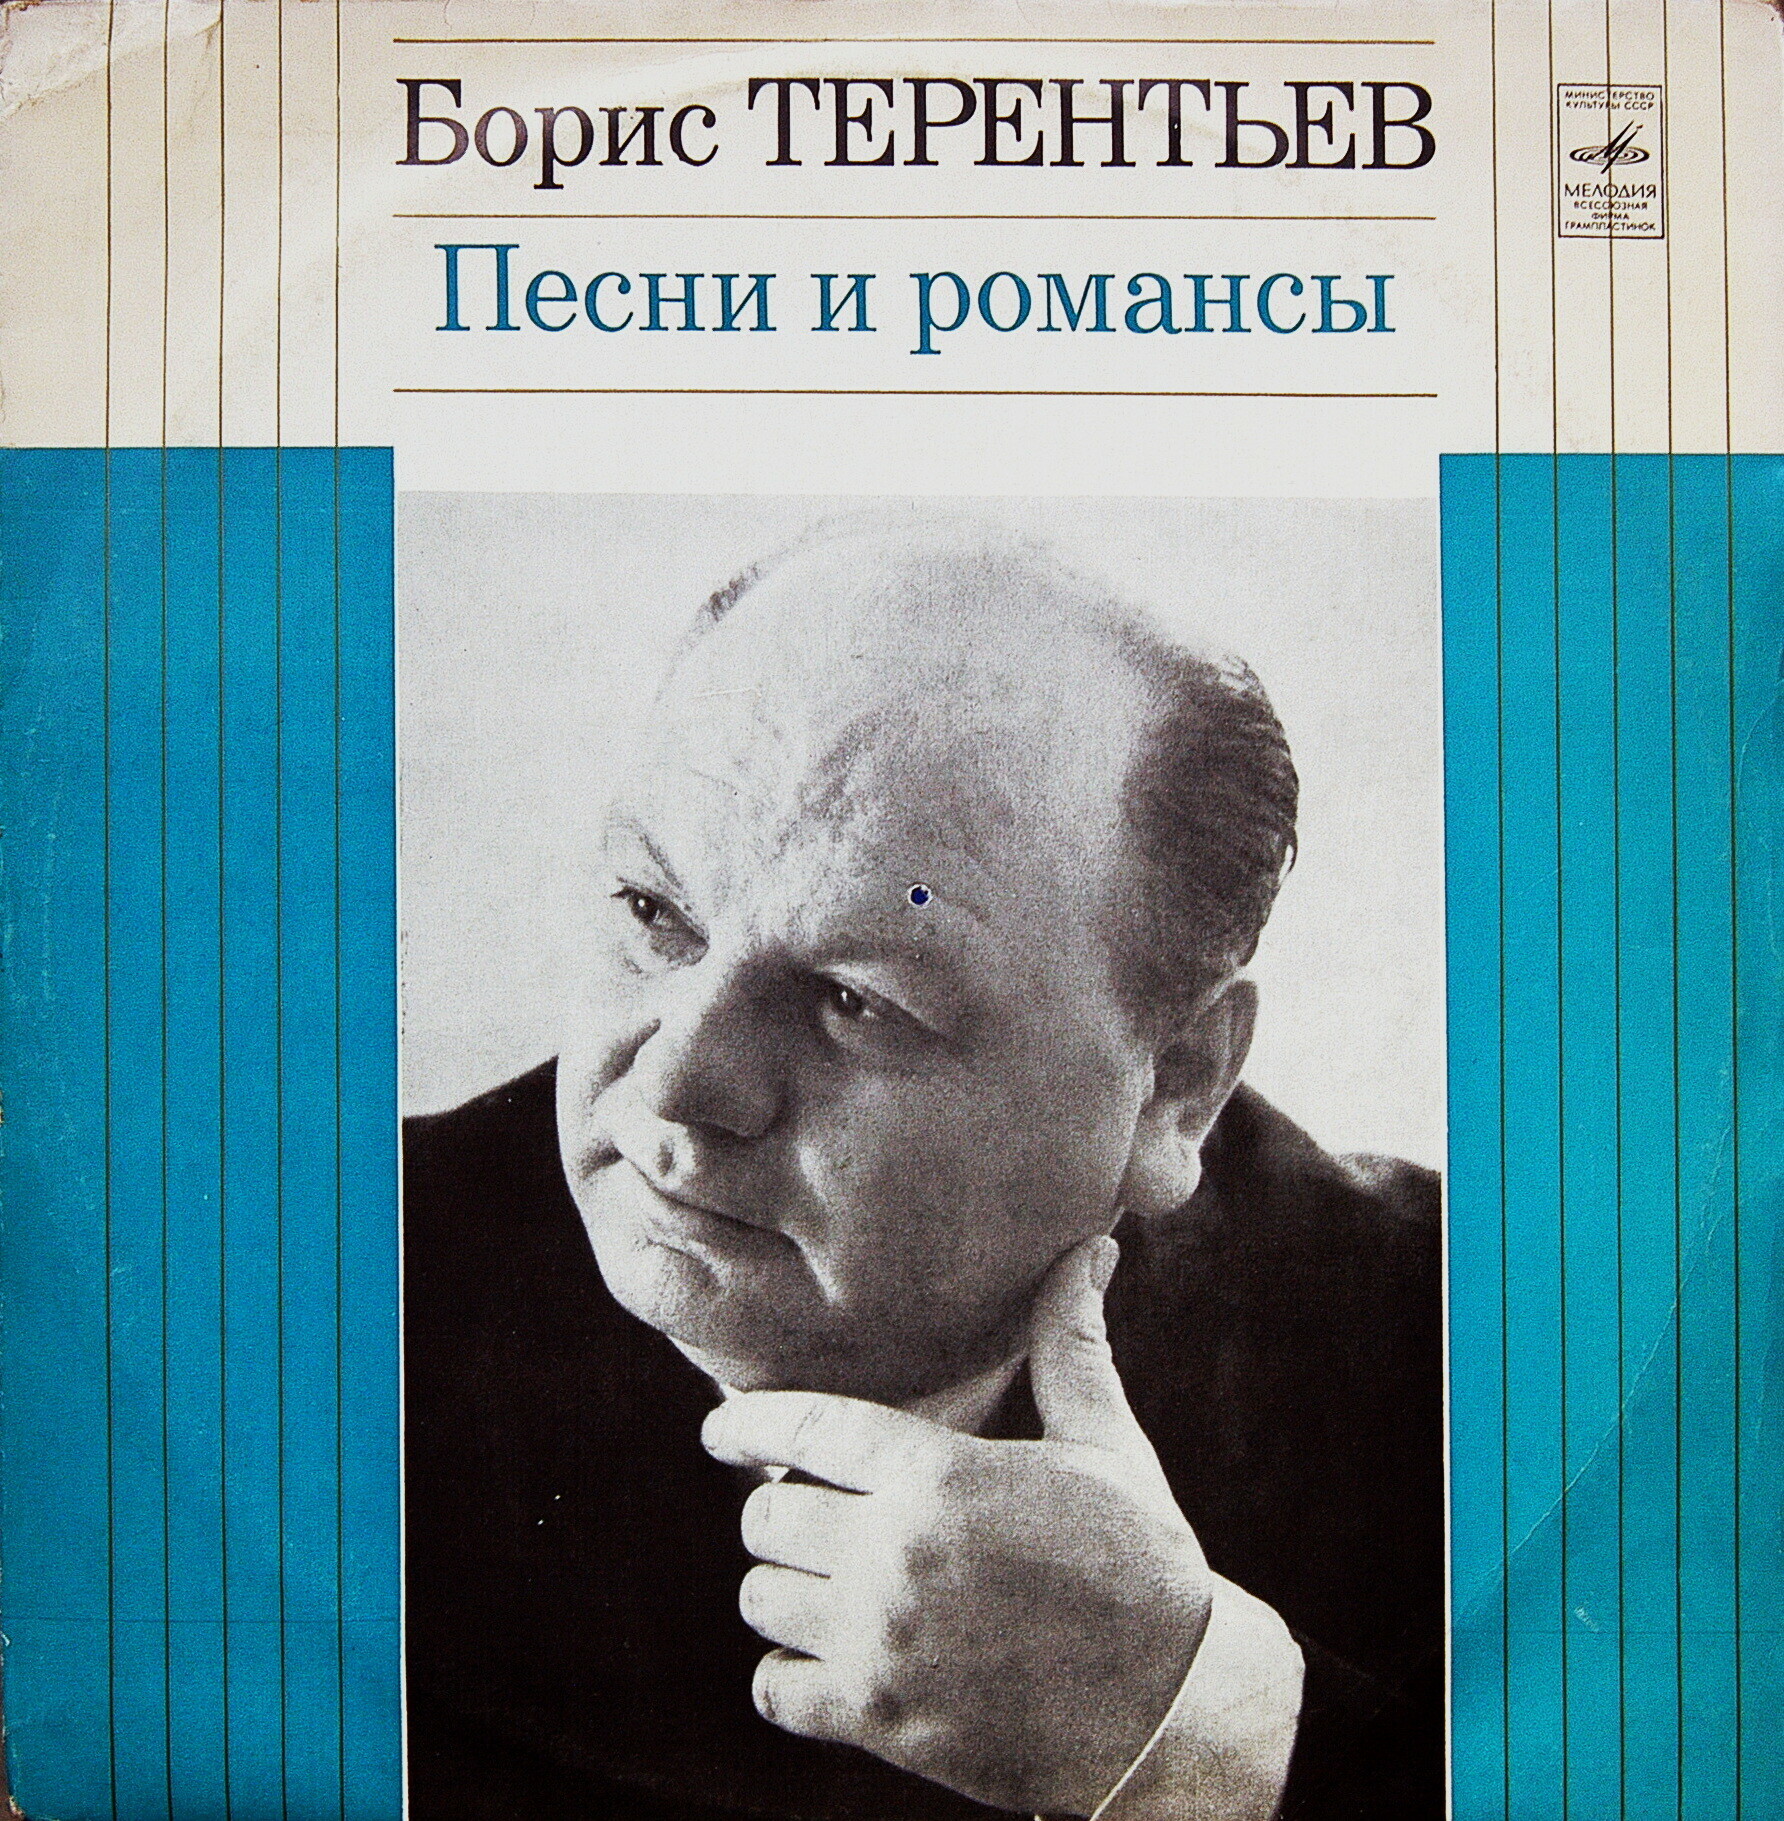 Борис Терентьев. Песни и романсы